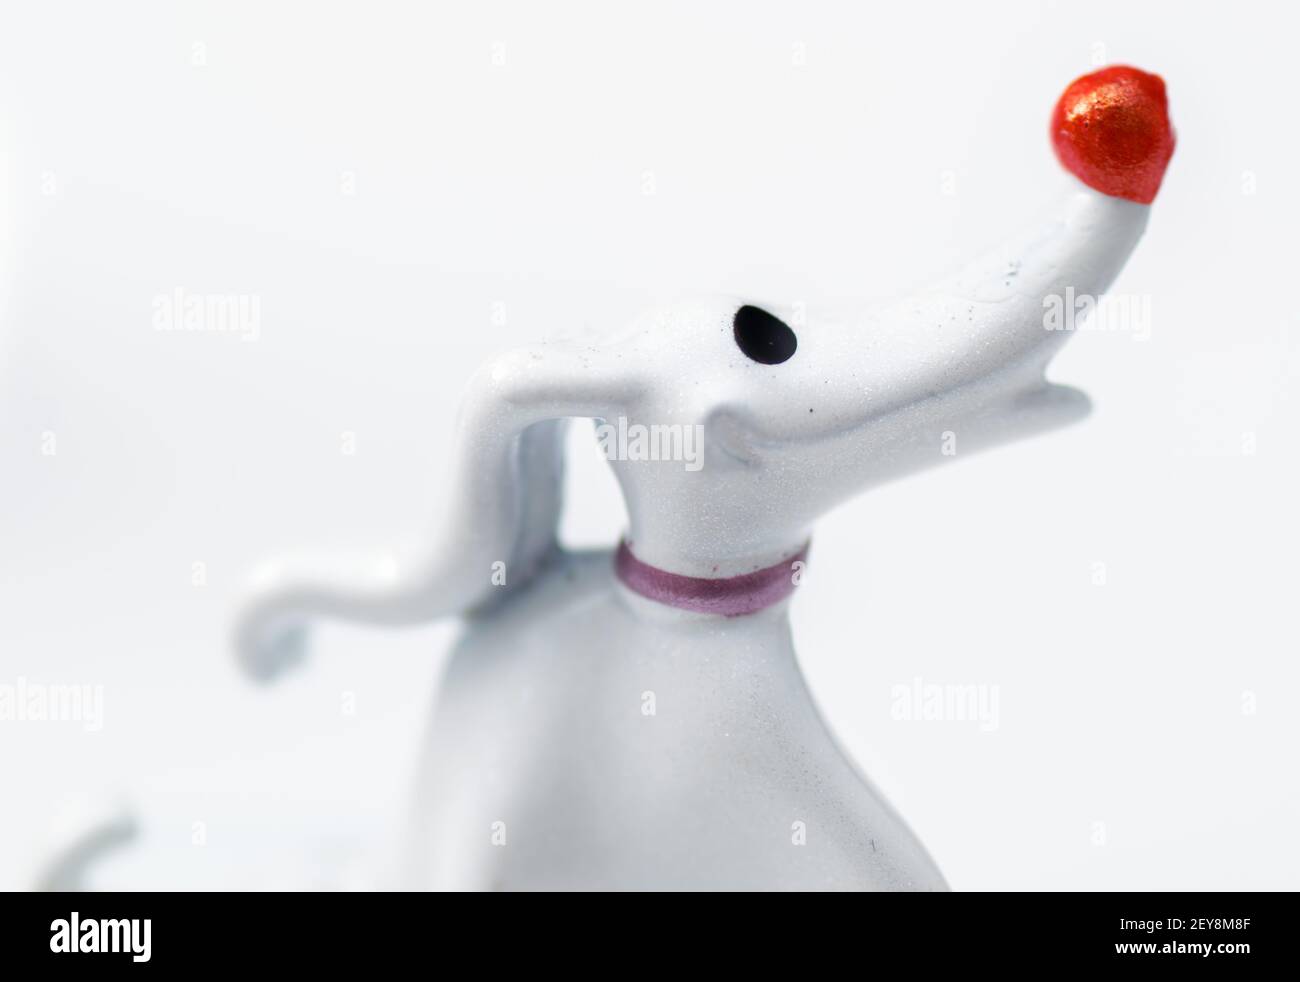 LONDRES, Reino Unido - 26 de enero de 2021 : Figurita metálica del perro  Zero, personaje de la película de Tim Burton, pesadilla antes de Navidad  Fotografía de stock - Alamy